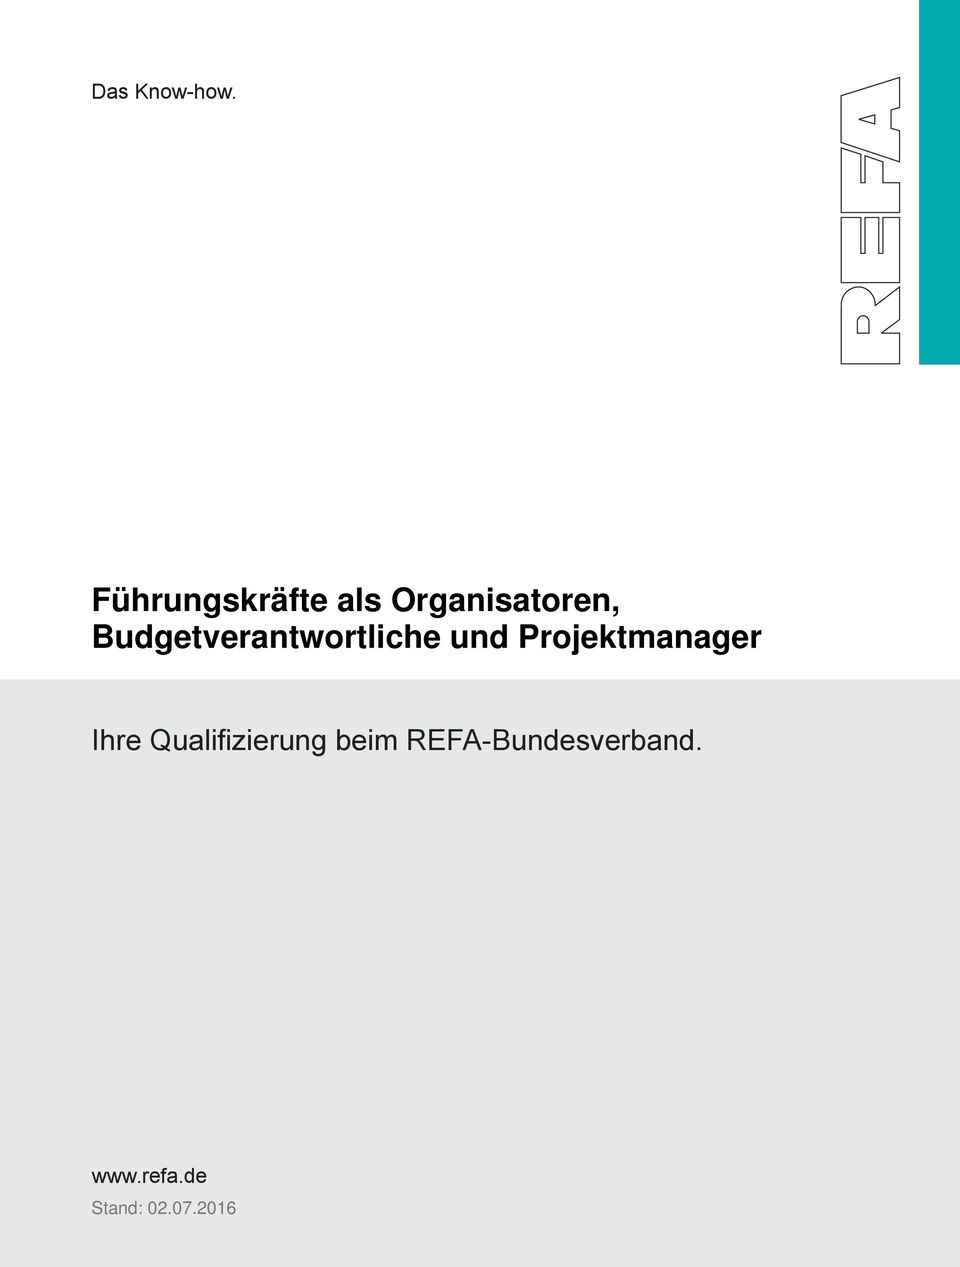 Qualifizierung beim REFA-Bundesverband.